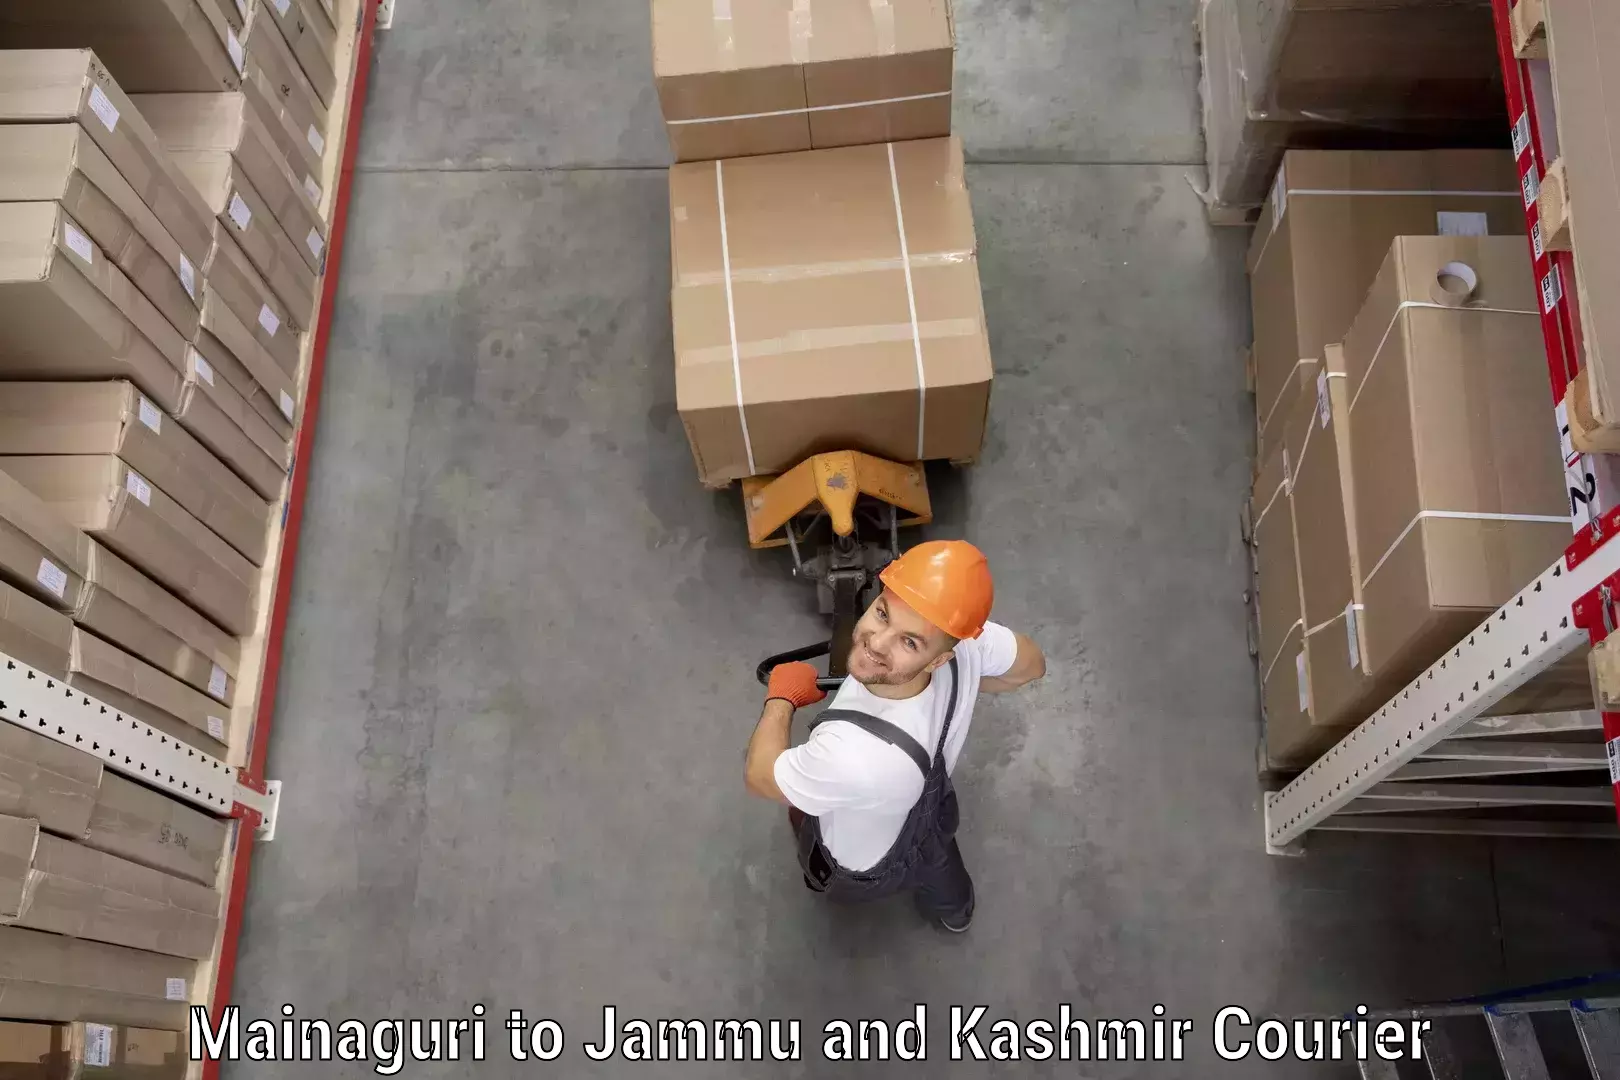 Express courier facilities Mainaguri to Jammu and Kashmir